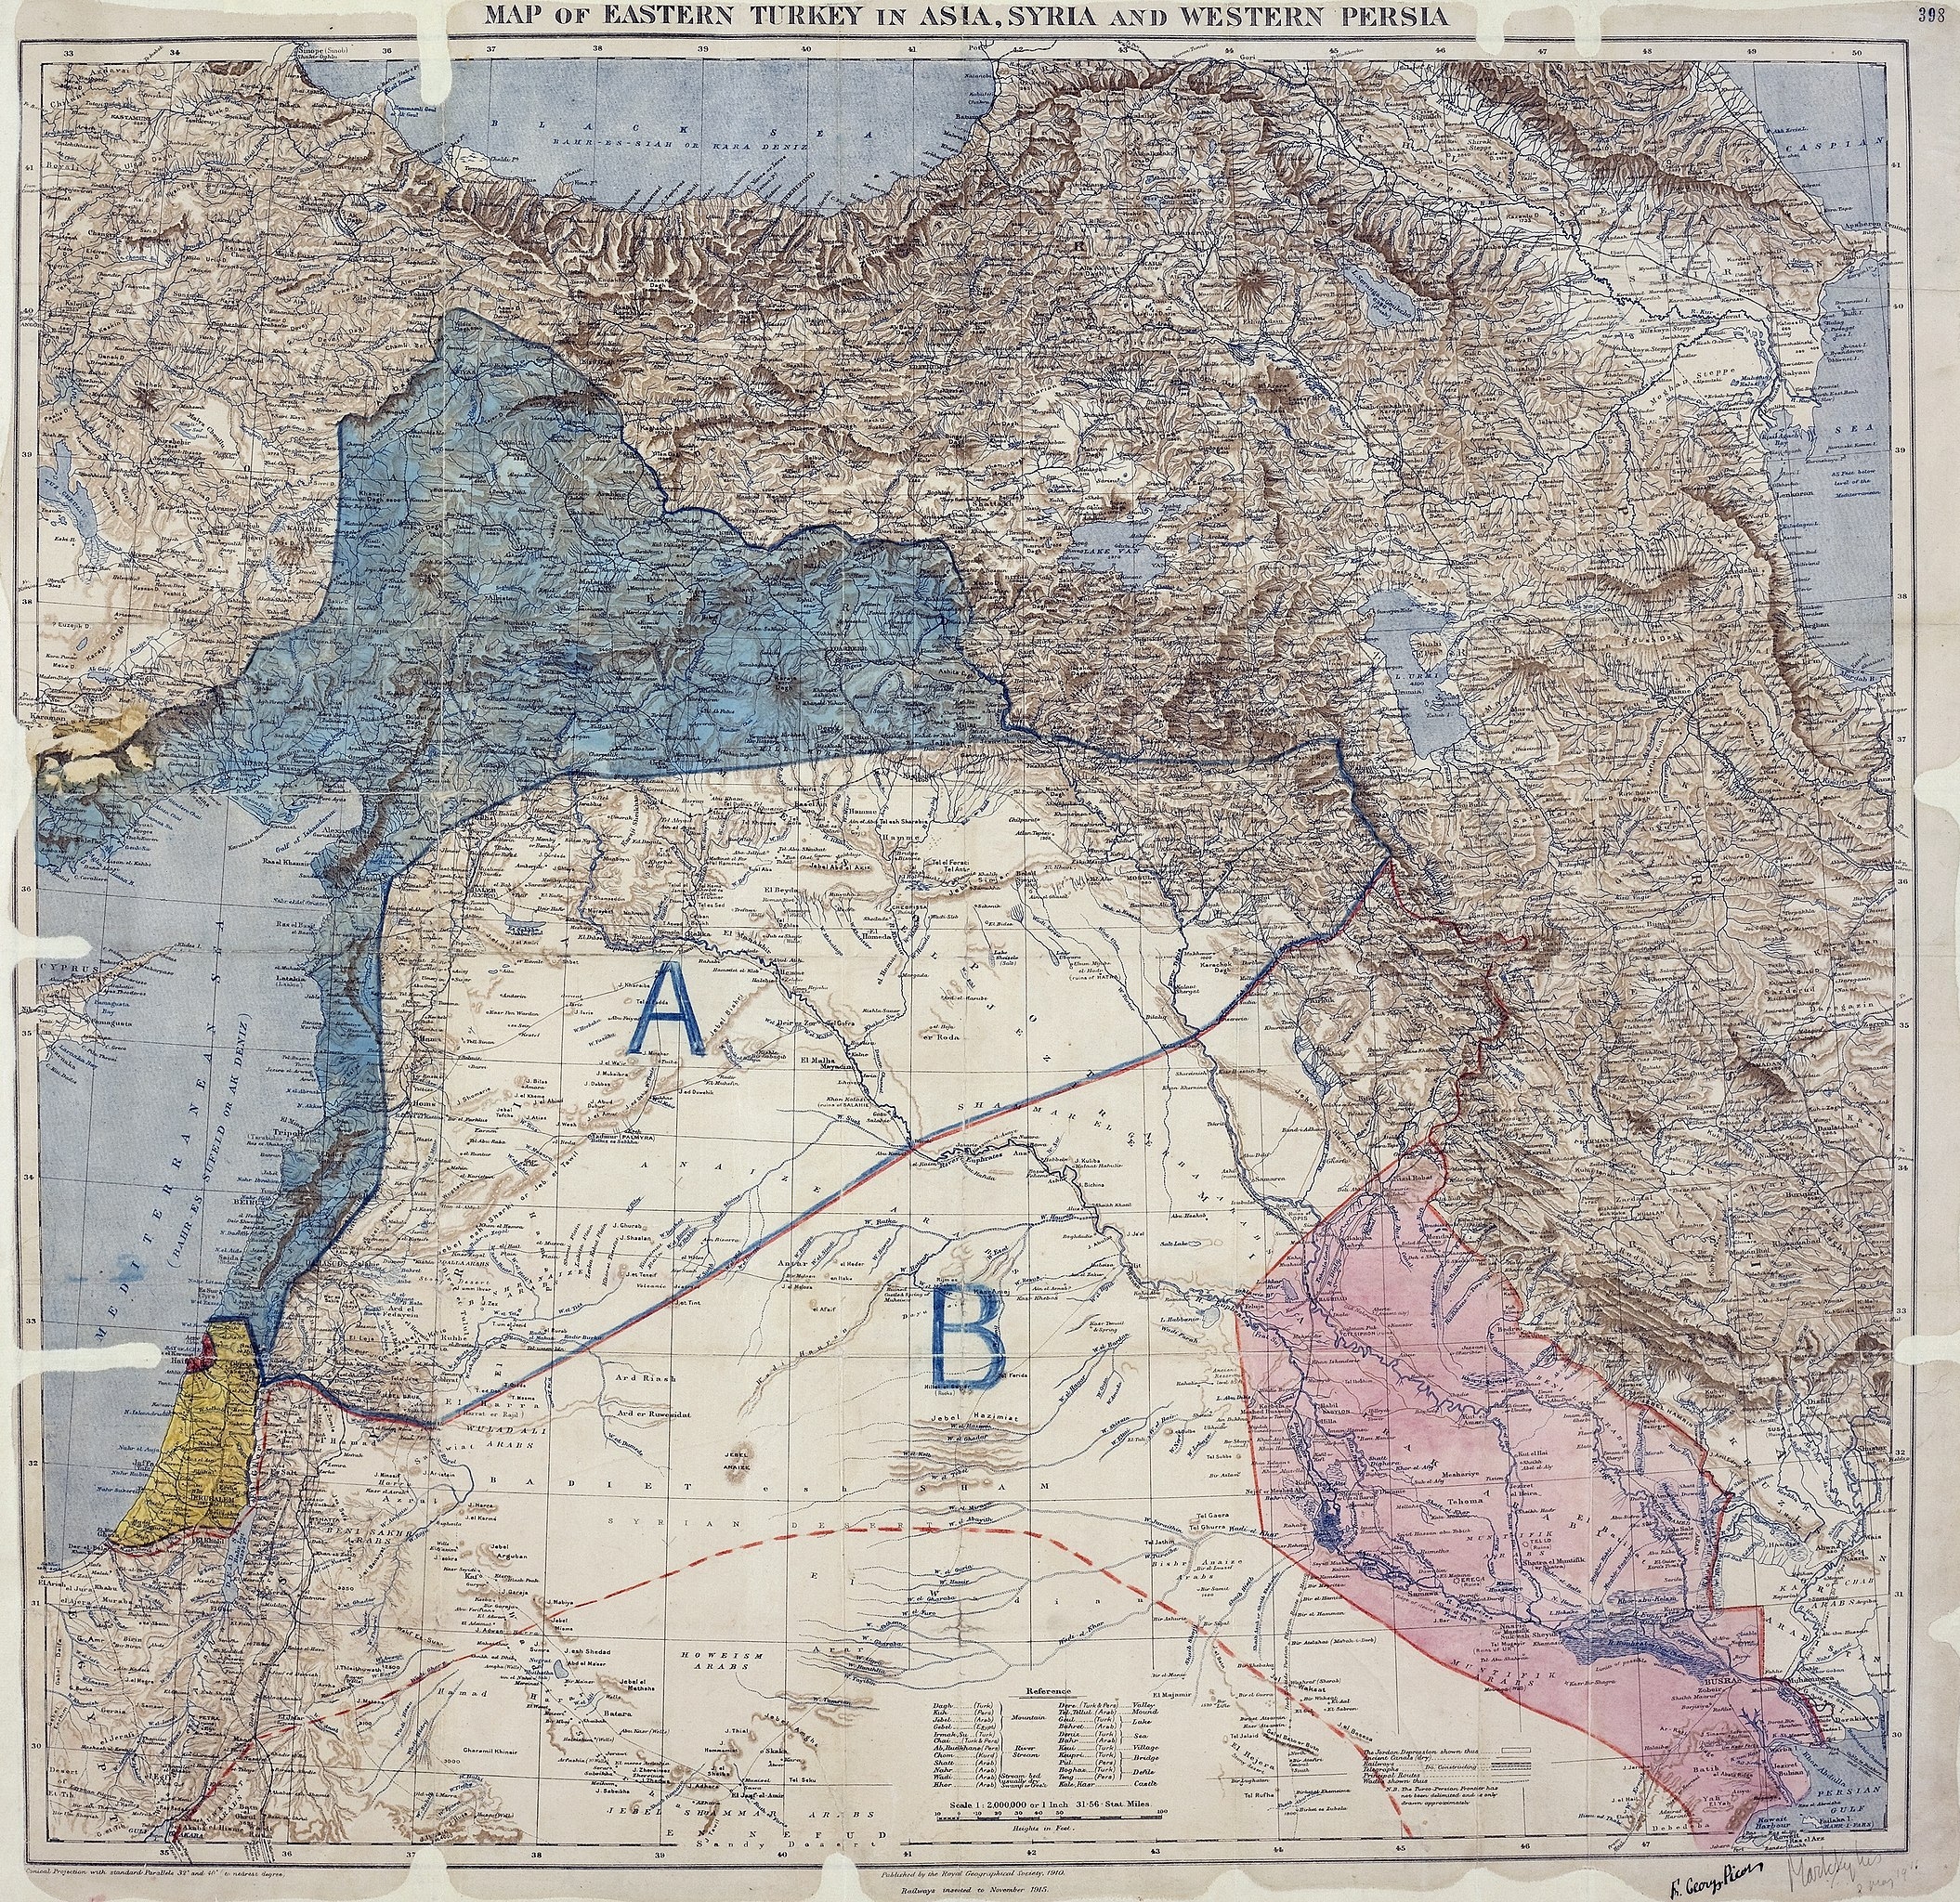 1916년 사이크스와 피코가 작성한 영토 분할 지도. 이때 그어진 선은 오늘날까지 레바논·시리아·이스라엘·요르단·이라크의 국경선으로 남아 있다. 위키피디아 제공